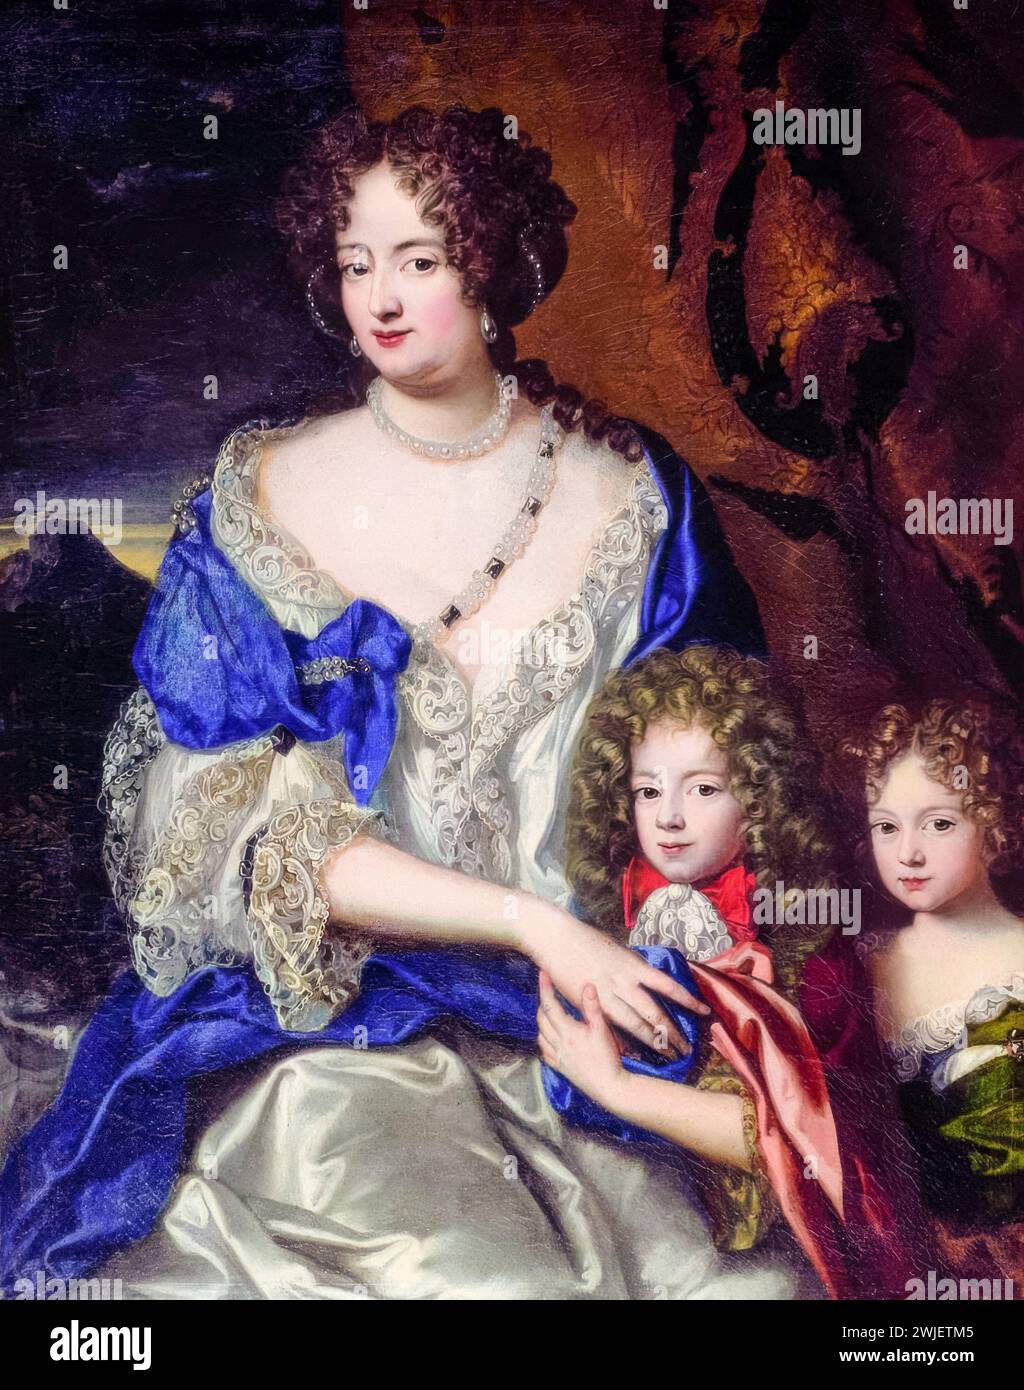 Sophie Dorothée de celle (1666-1726), avec ses enfants Georg August (1683-1760, futur roi George II de Grande-Bretagne) et Sophie Dorothée (1687-1757, future reine Sophie Dorothée de Prusse), portrait peint à l'huile sur toile par Jacques Vaillant, 1690-1691 Banque D'Images